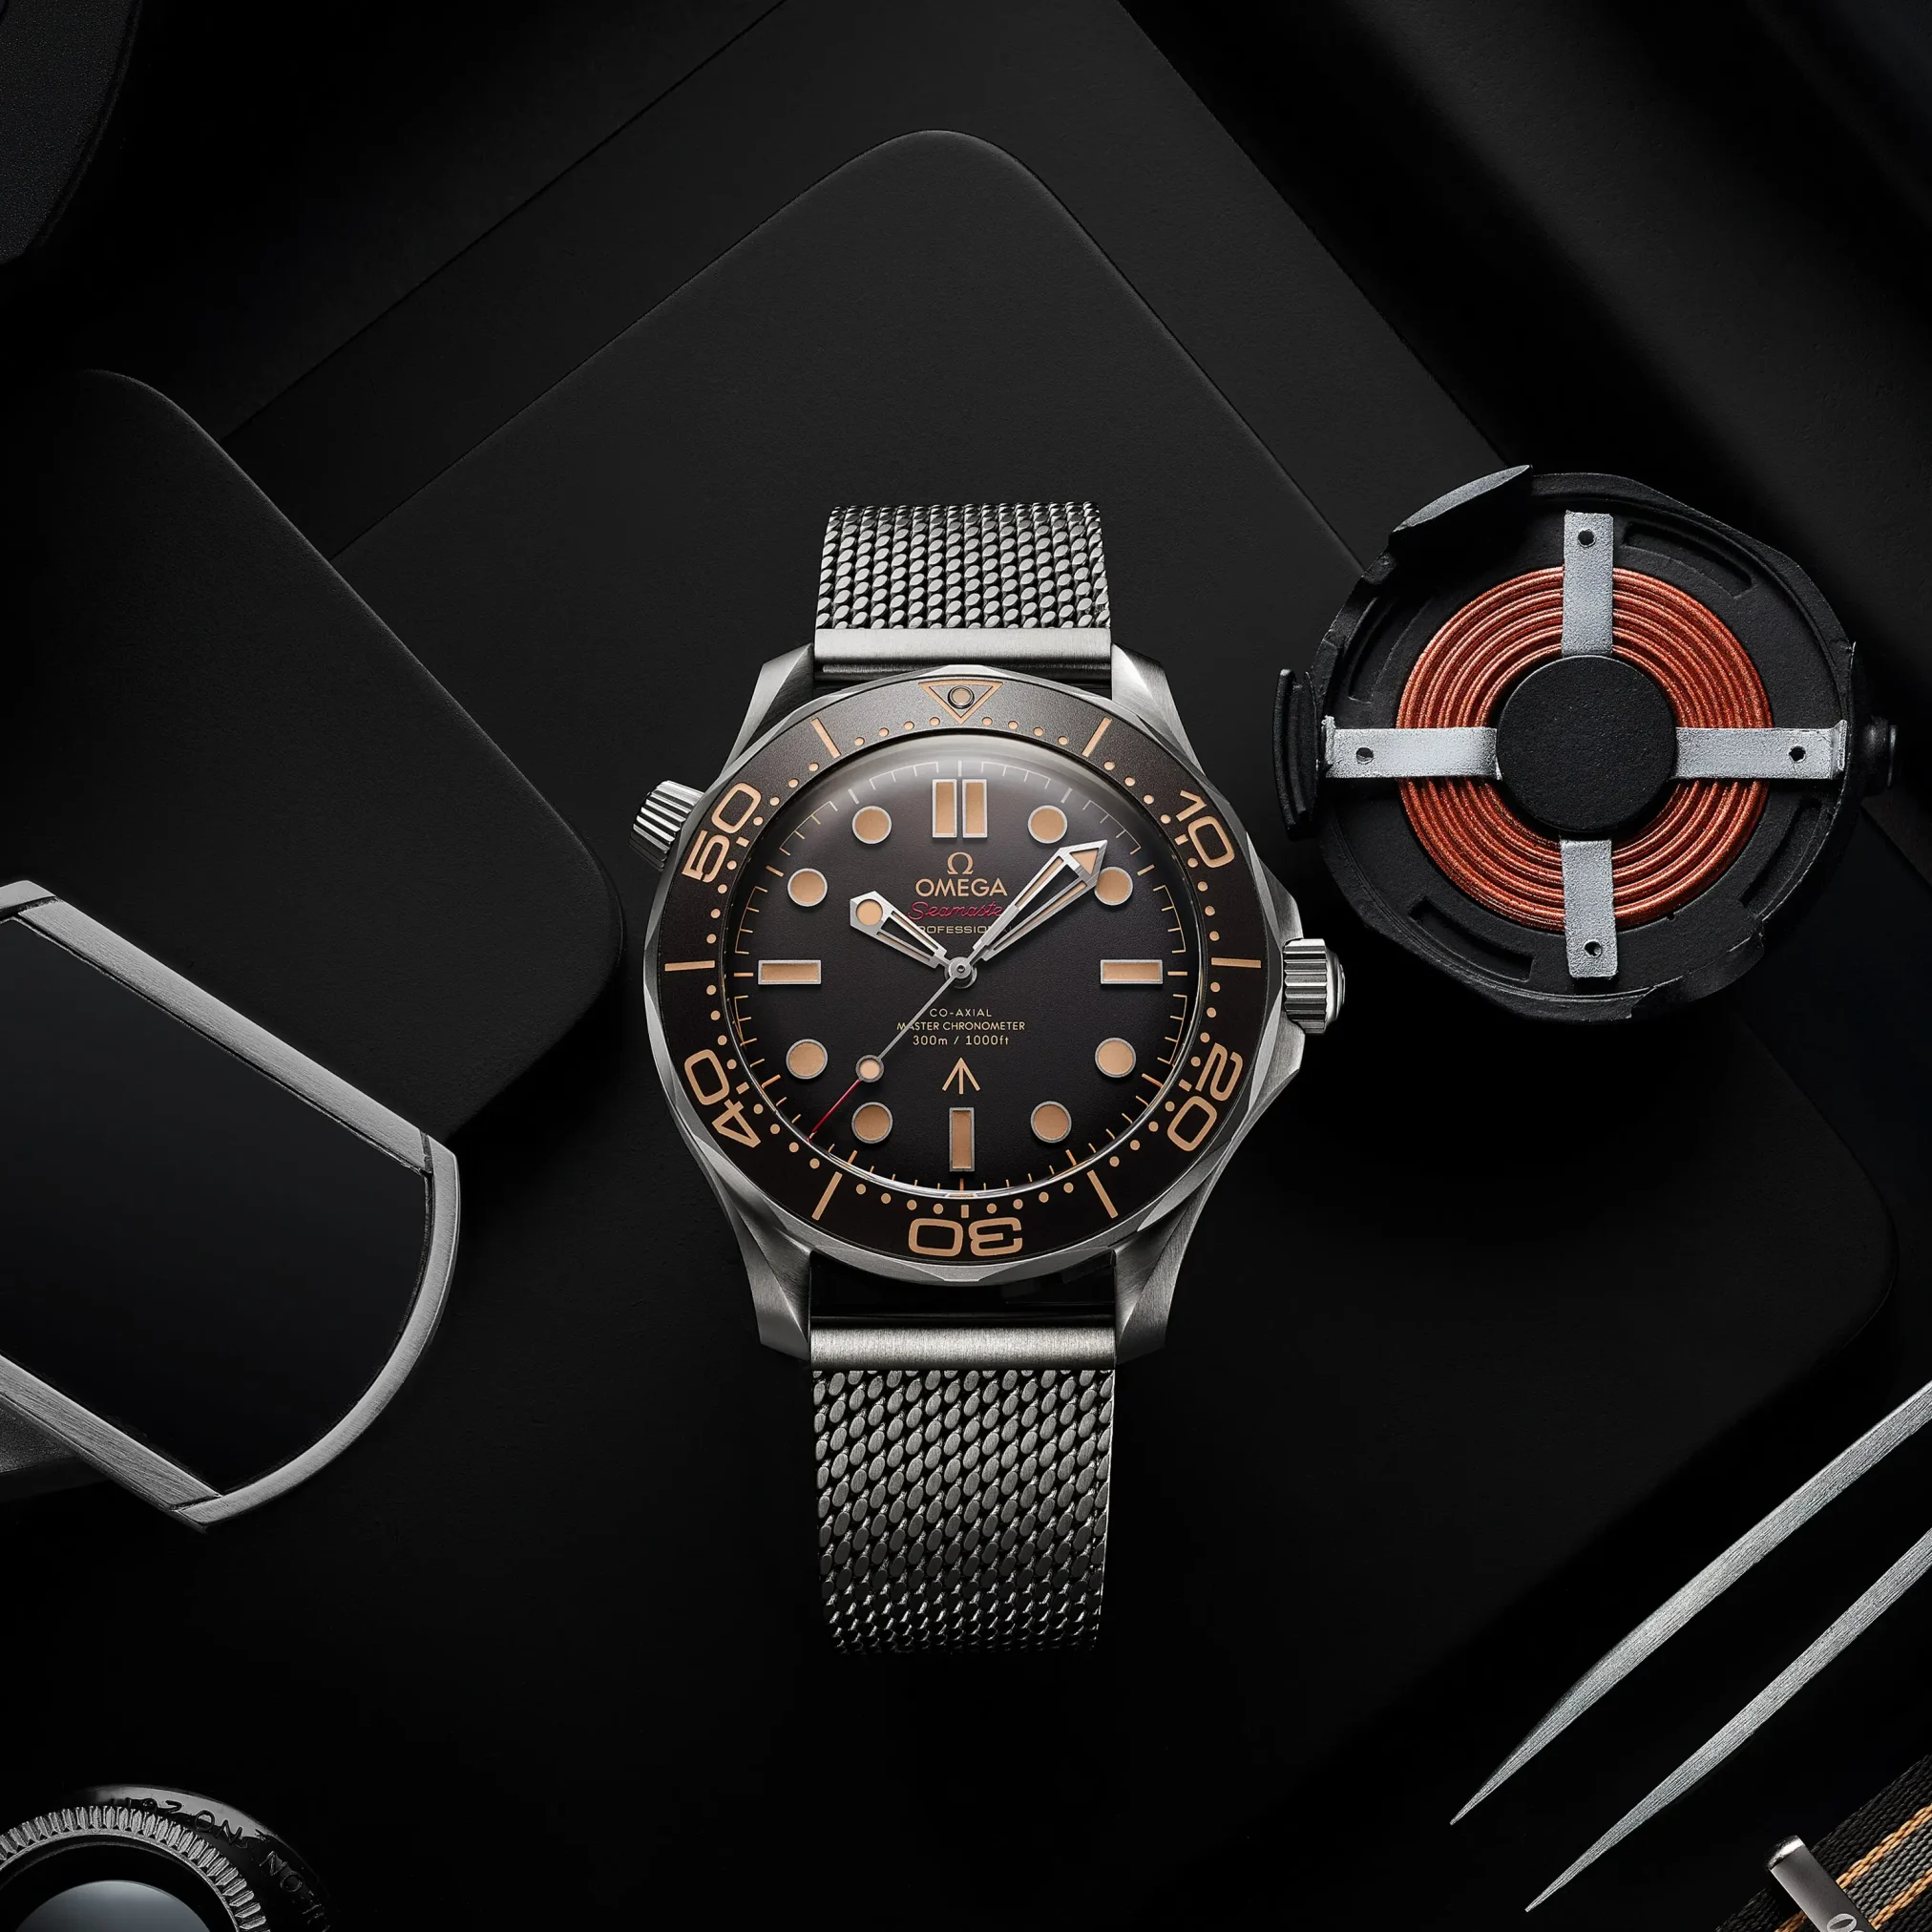 Đồng hồ Omega Seamaster Diver 300M "No Time To Die" 007 Limited 210.90.42.20.01.001 mặt số màu xám. Dây đeo bằng titanium. Thân vỏ bằng titanium.